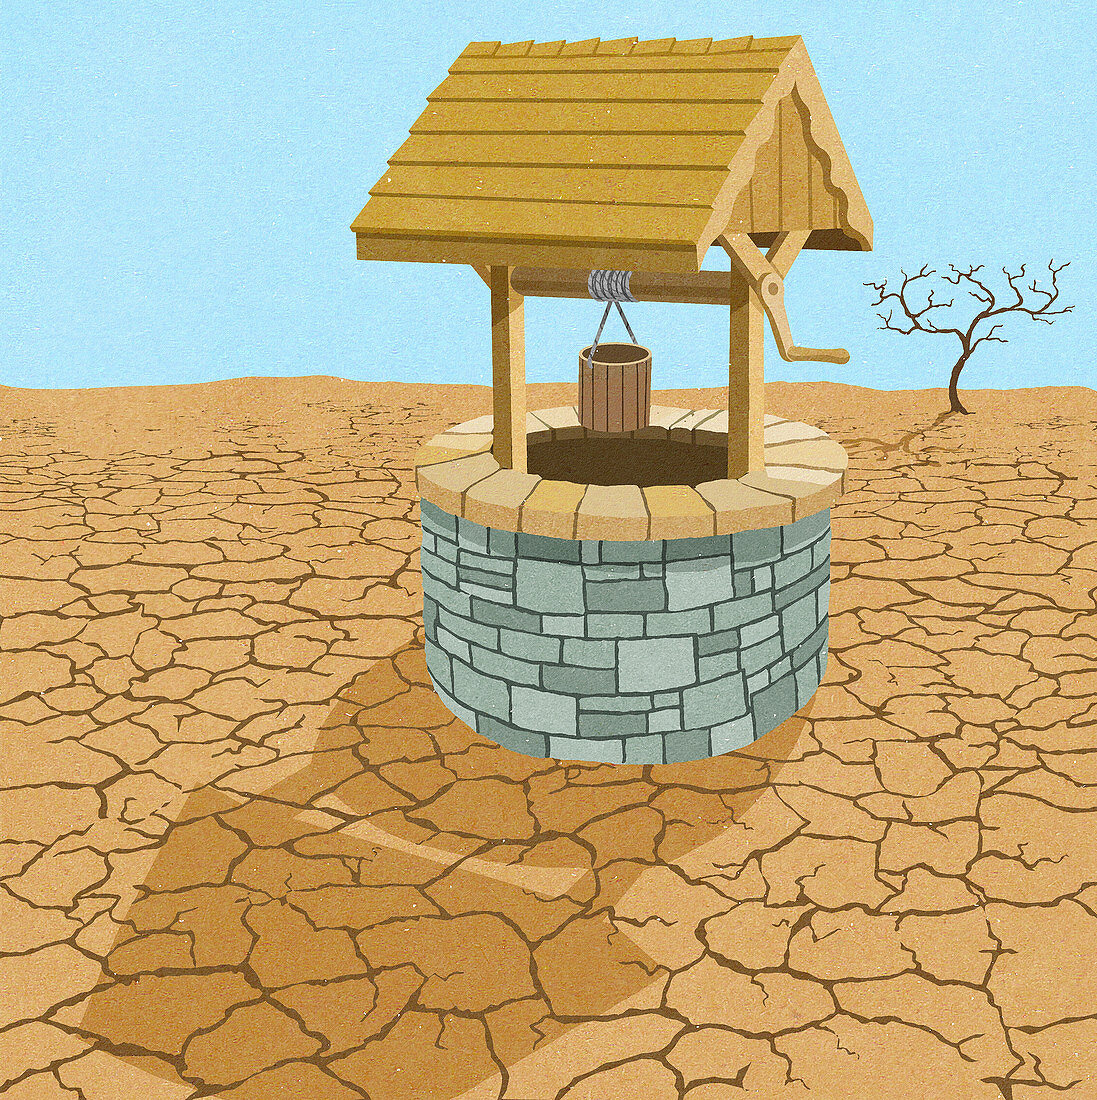 Water well in desert, illustration